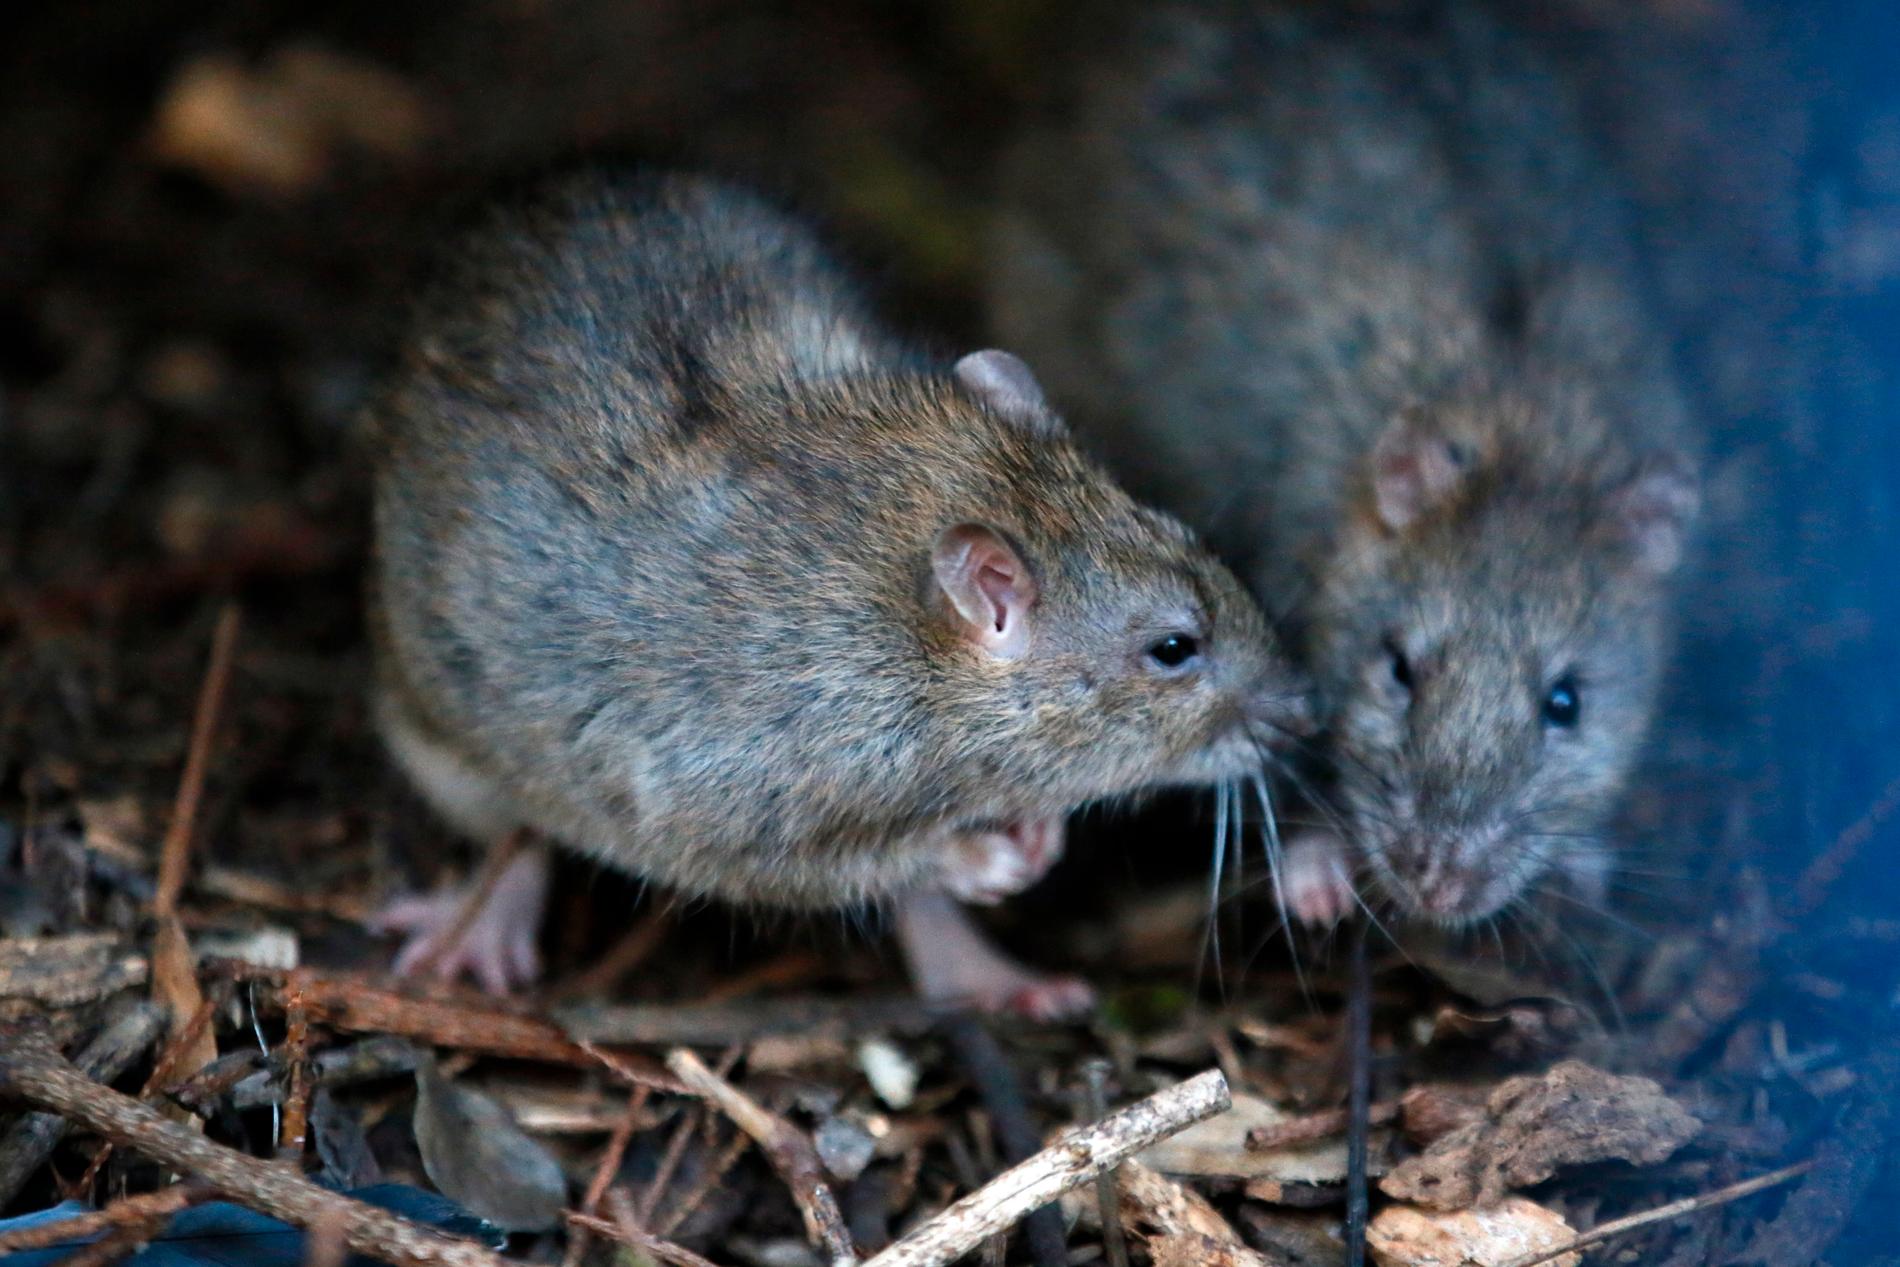 Råttorna bajsar i grannarnas källare och uterum och har också tagit sig in i deras förråd. Arkivbild.